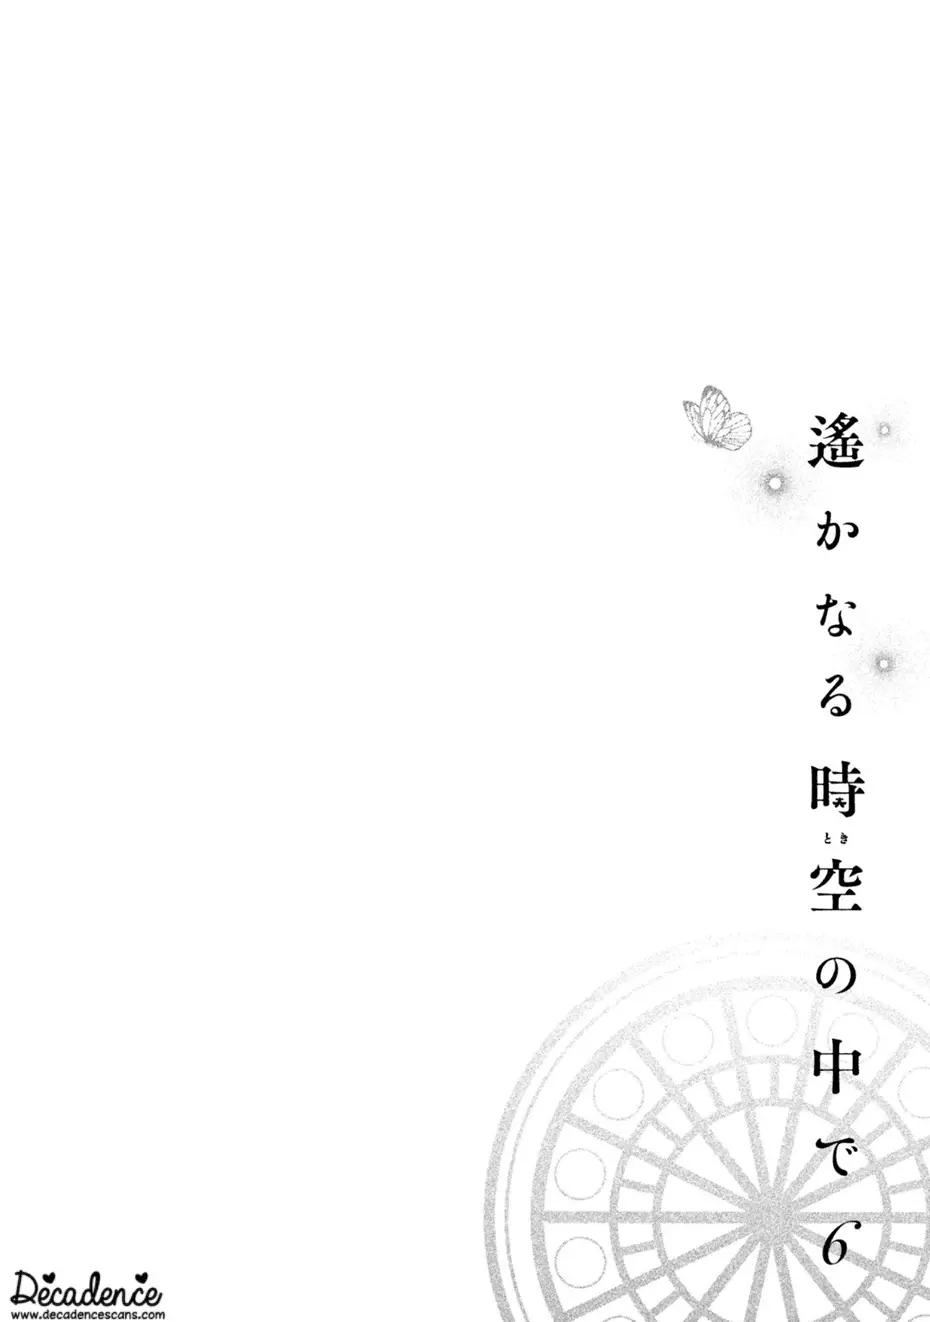 Harukanaru Jikuu No Naka De 6 - 30 page 2-1e40bdb0